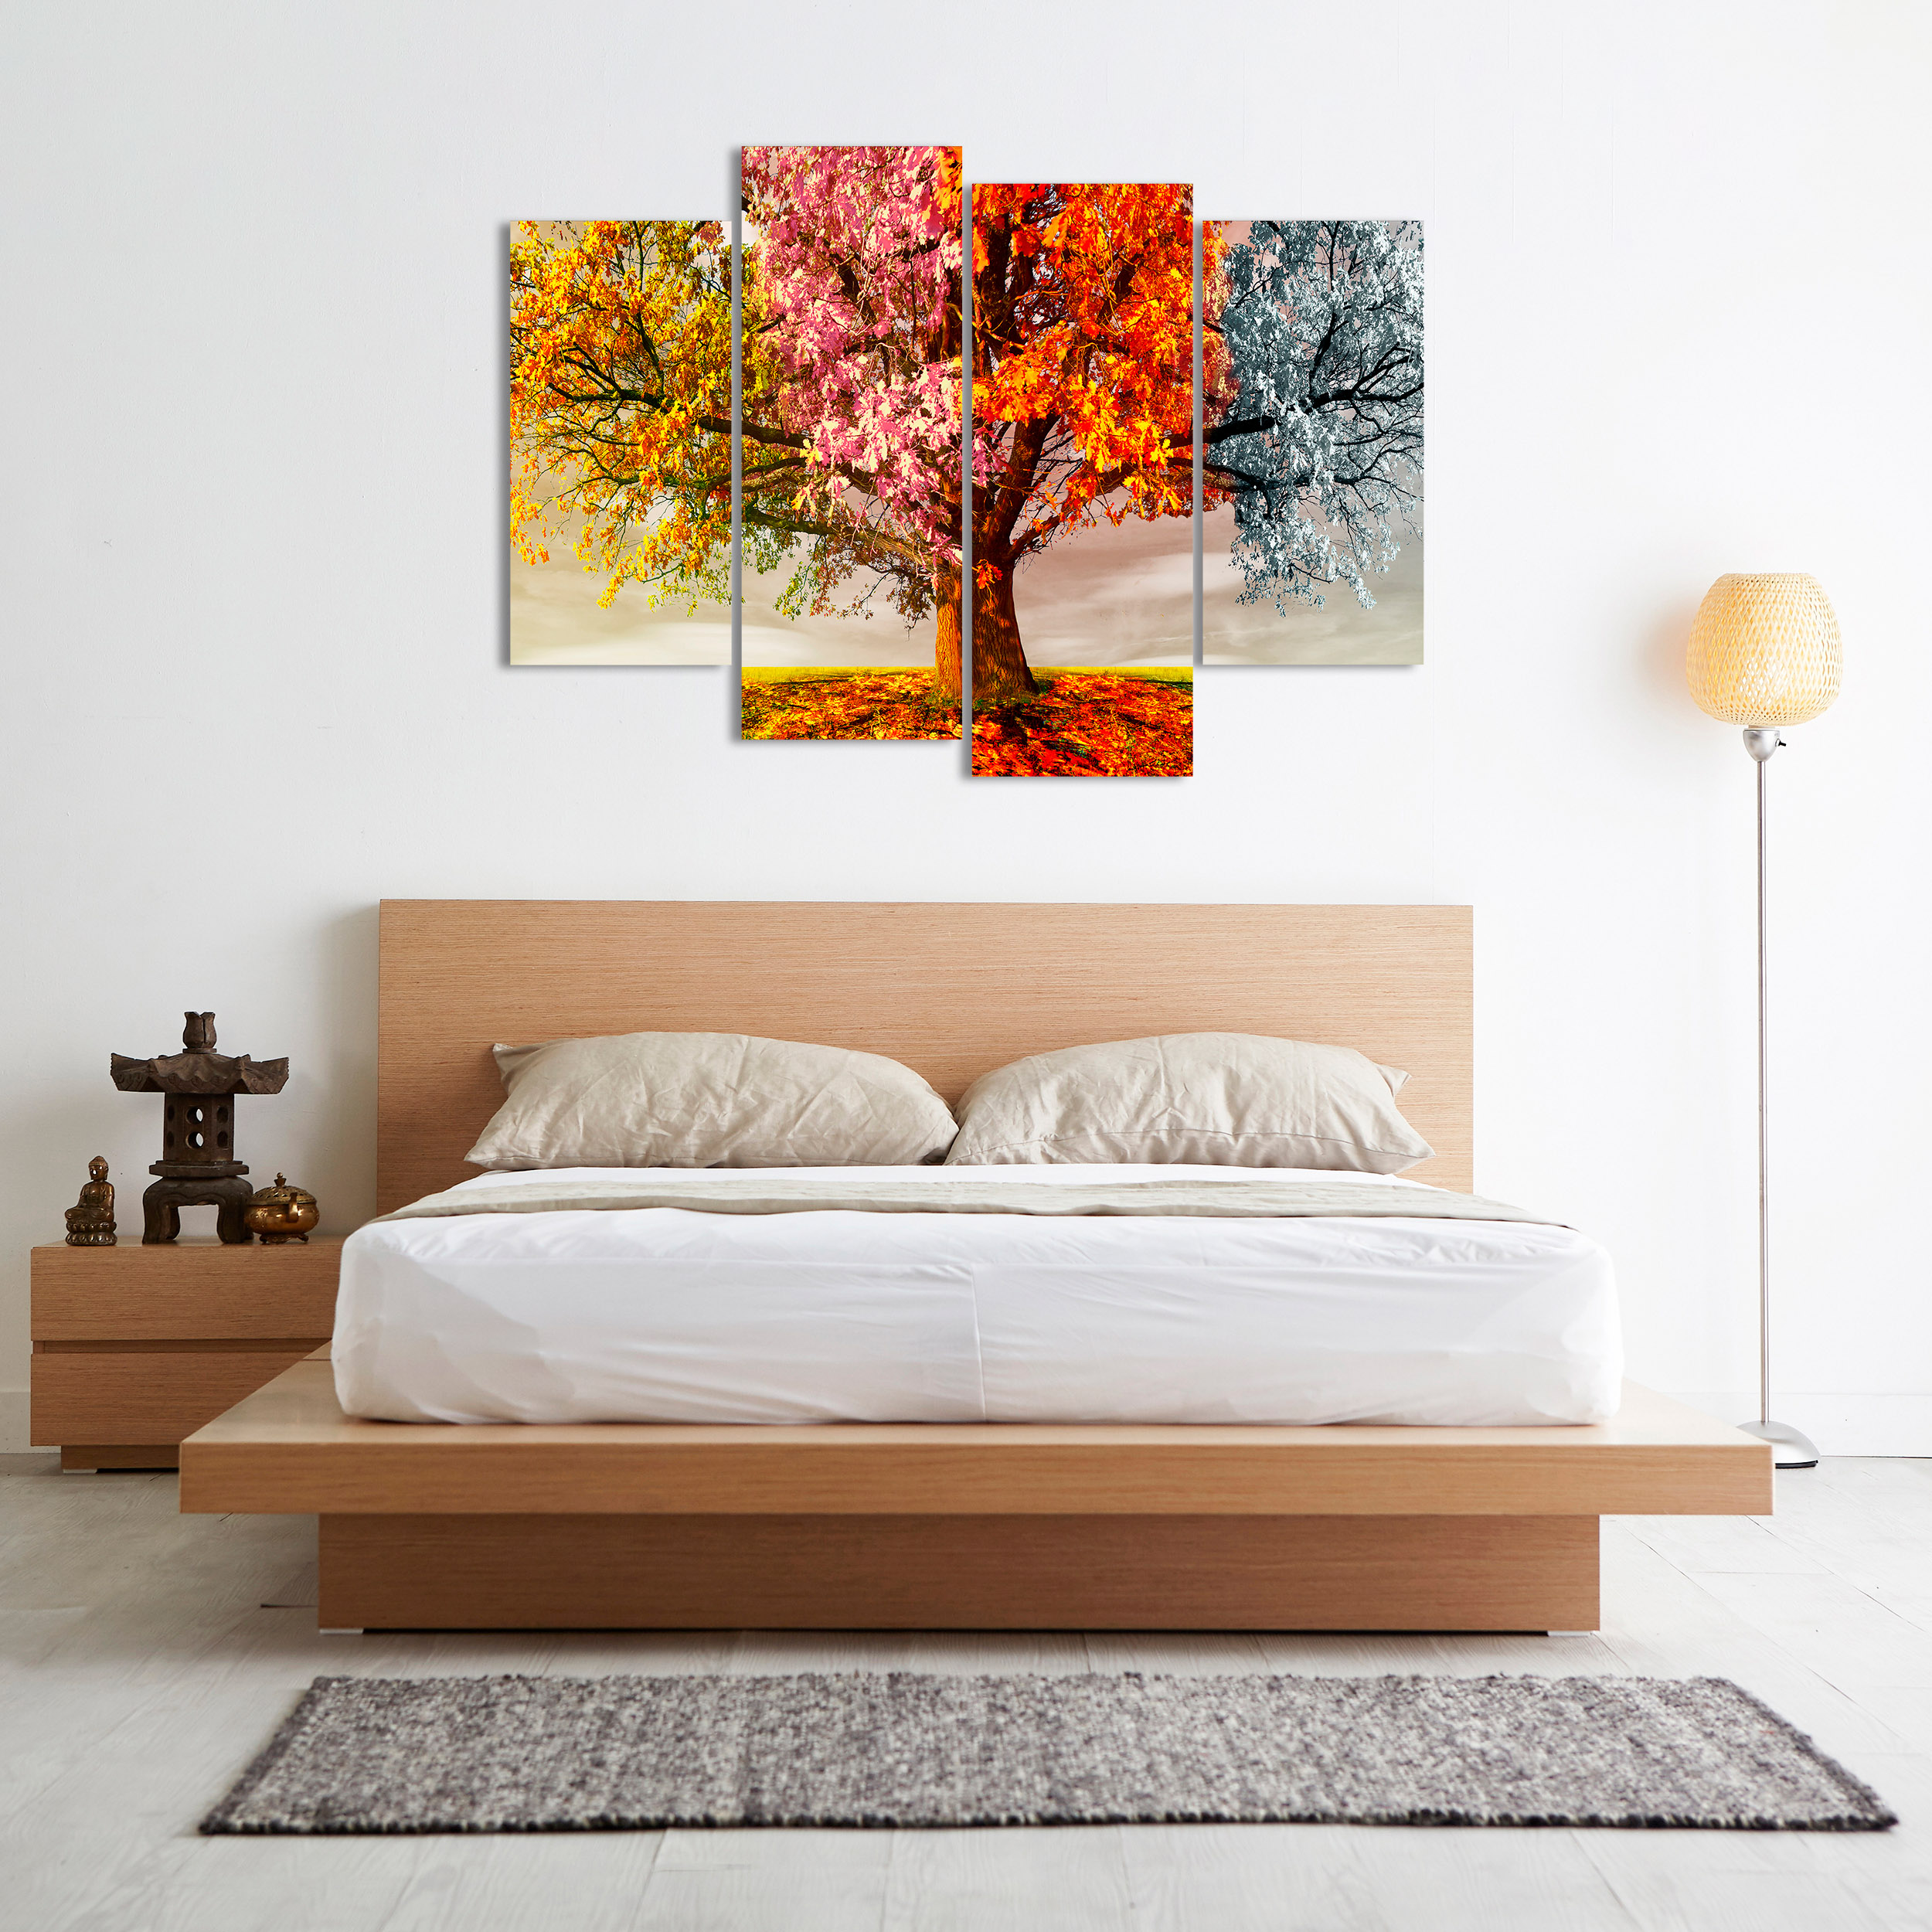 DekoArte - Cuadros Modernos Impresión de Imagen Artística, Lienzo  Decorativo, Abstracto Arte Árbol de la Vida de Gustav Klimt, 1 Pieza  120x80cm